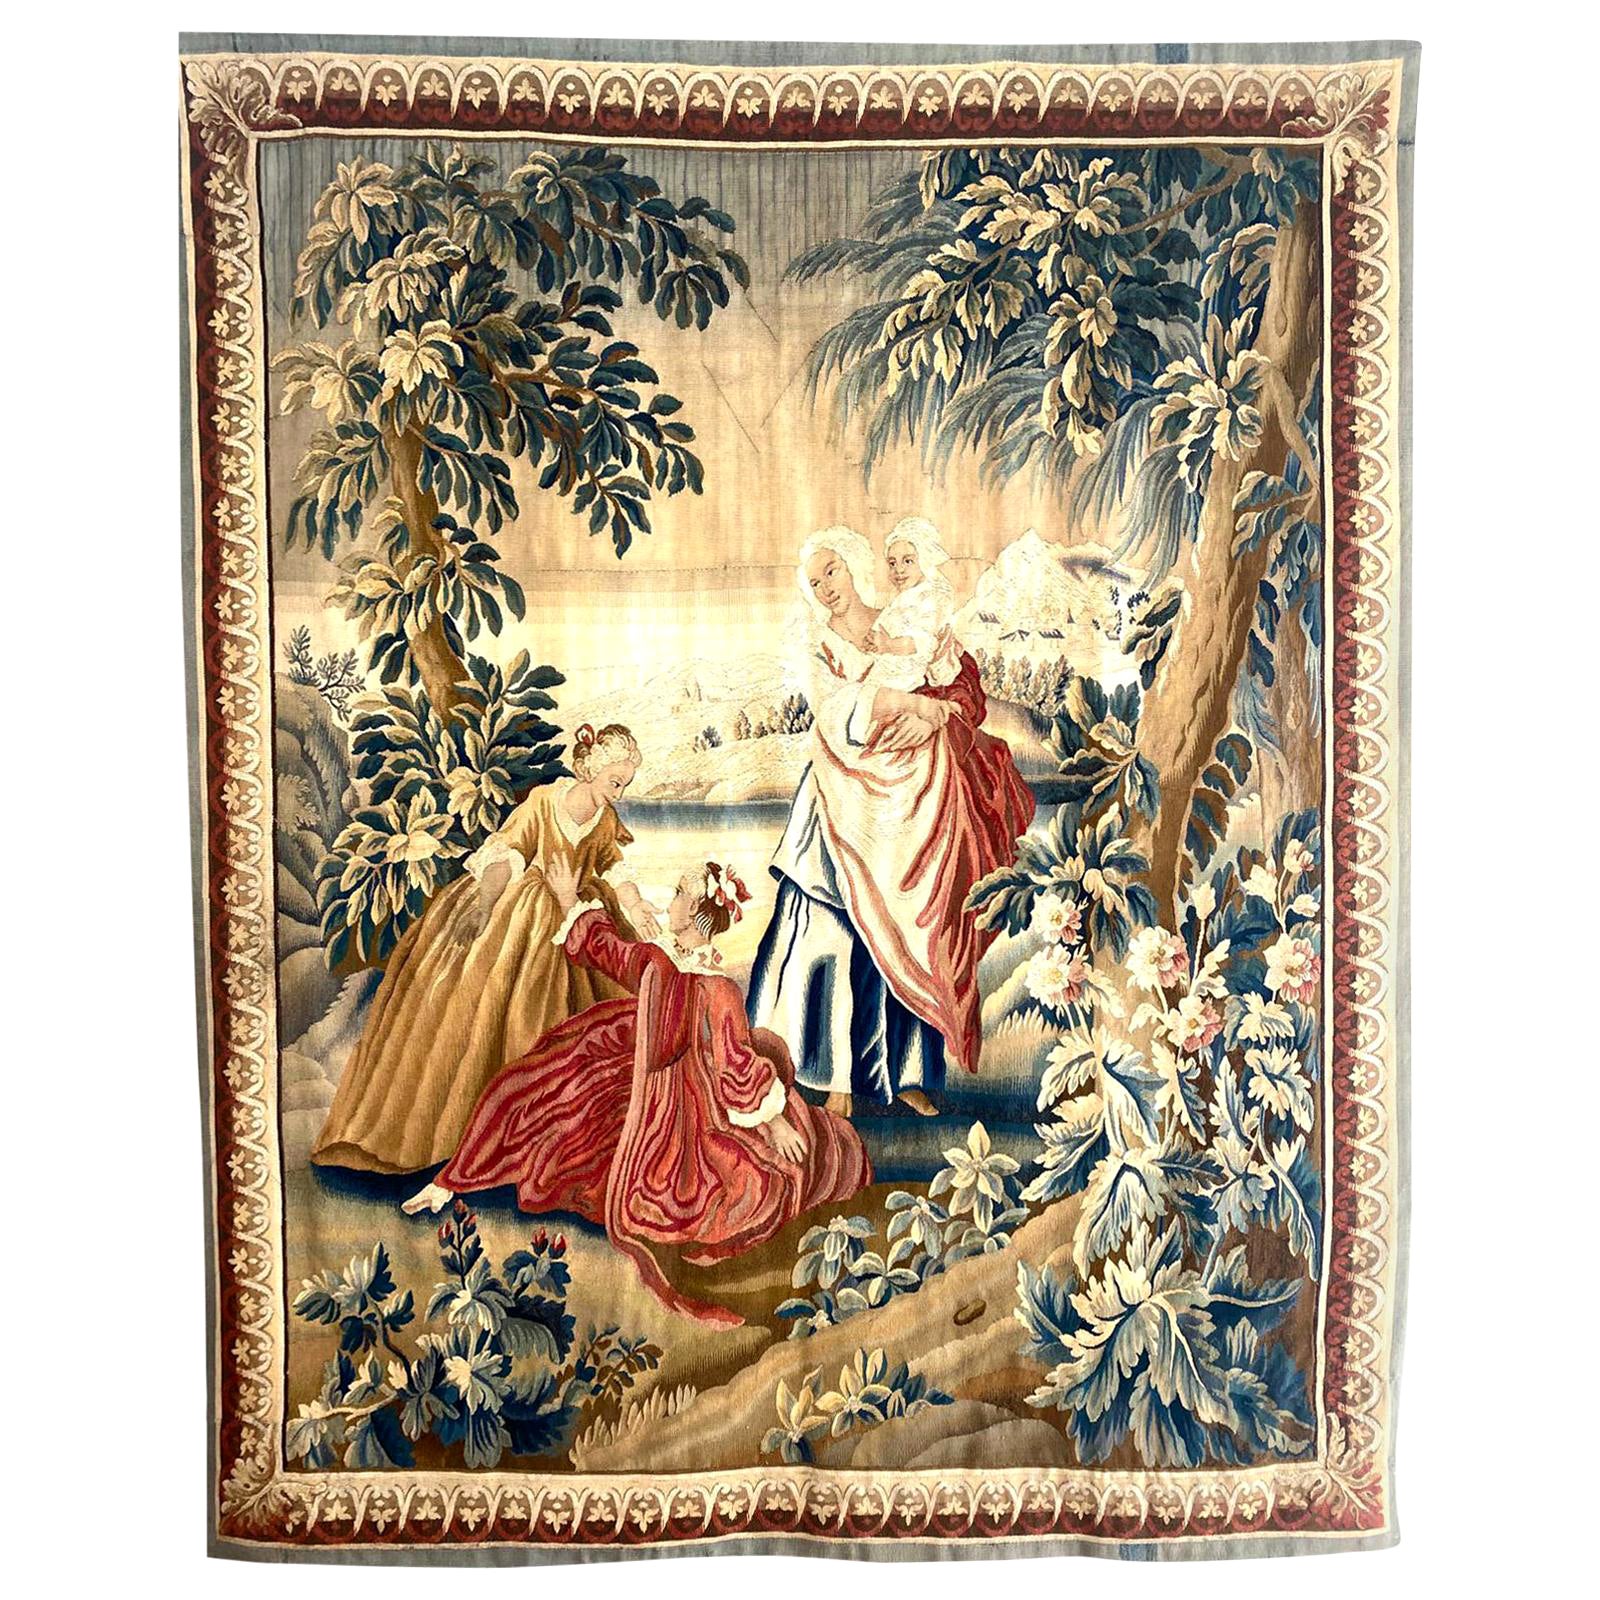 Sublime manufacture royale de tapisserie d'Aubusson du 18ème siècle, période Louis XVI